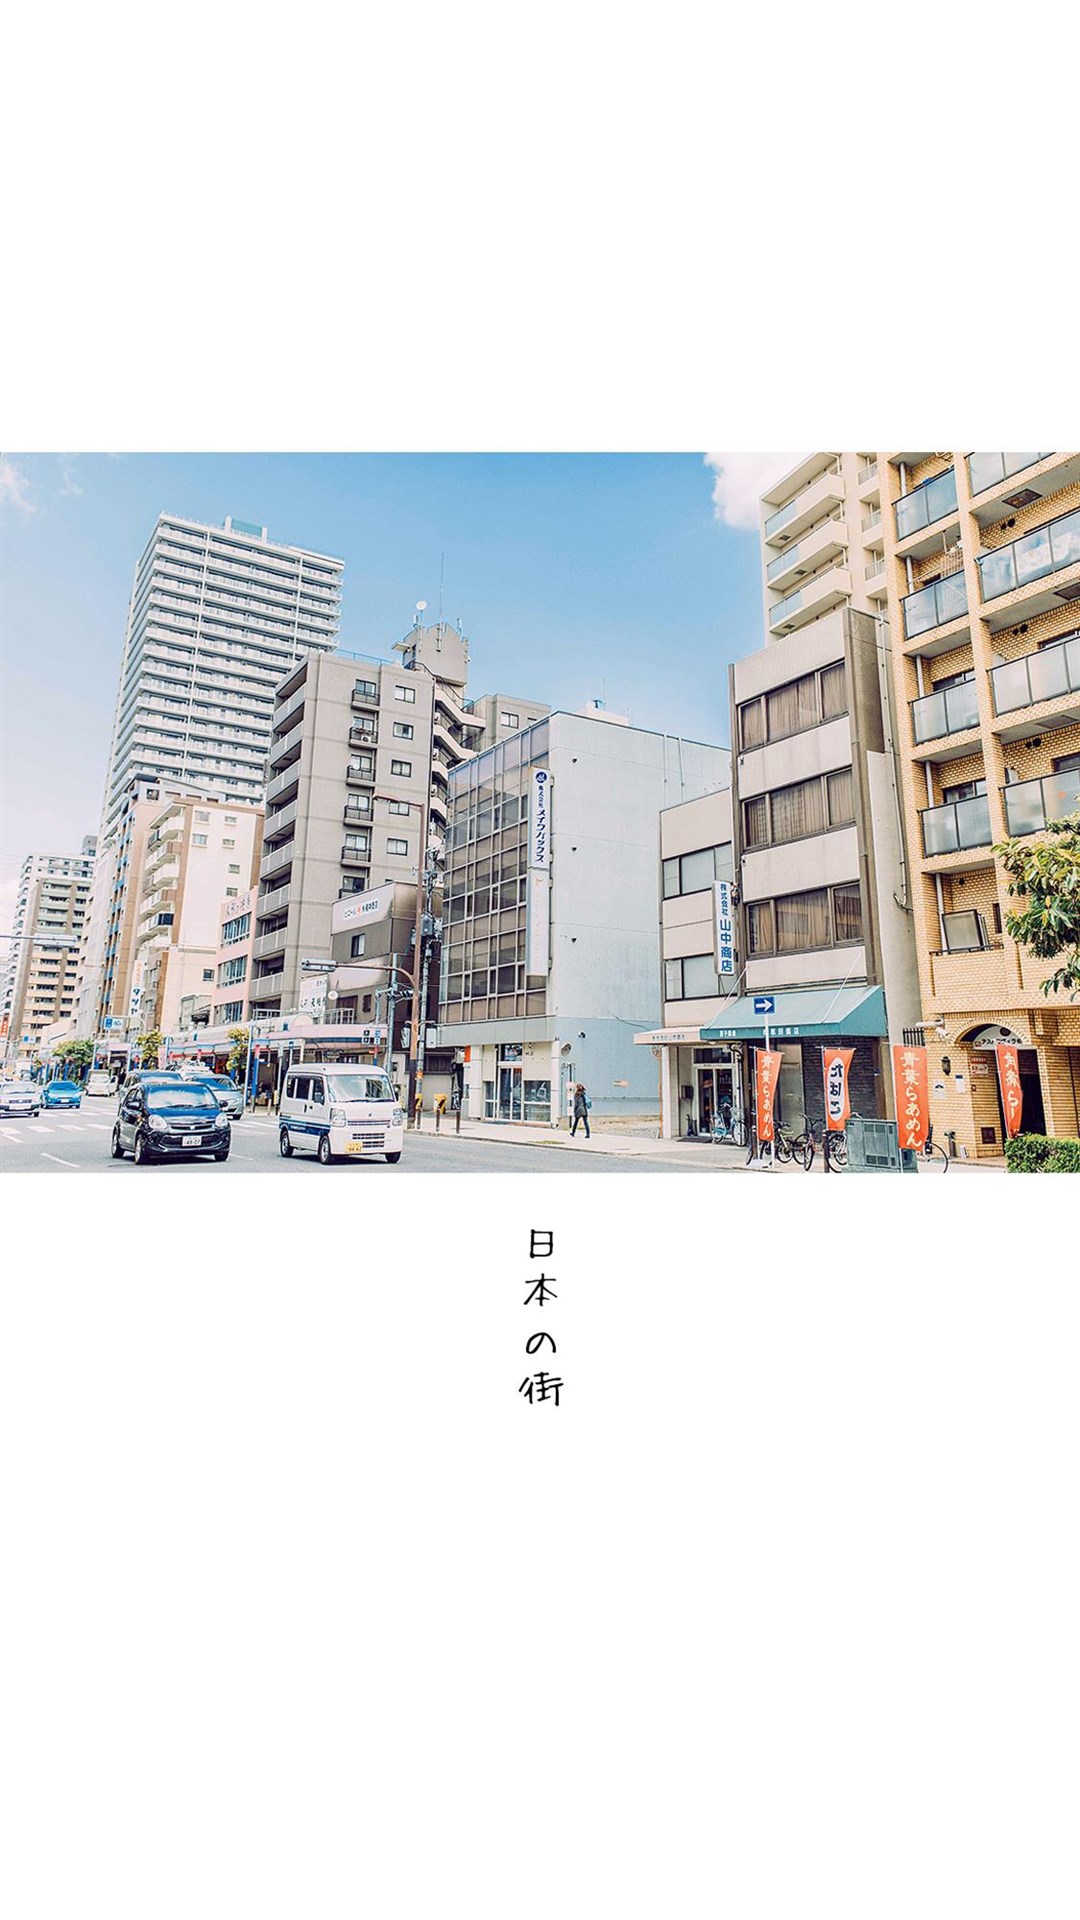 街景图片素材 清新简约日本街景风光手机壁纸